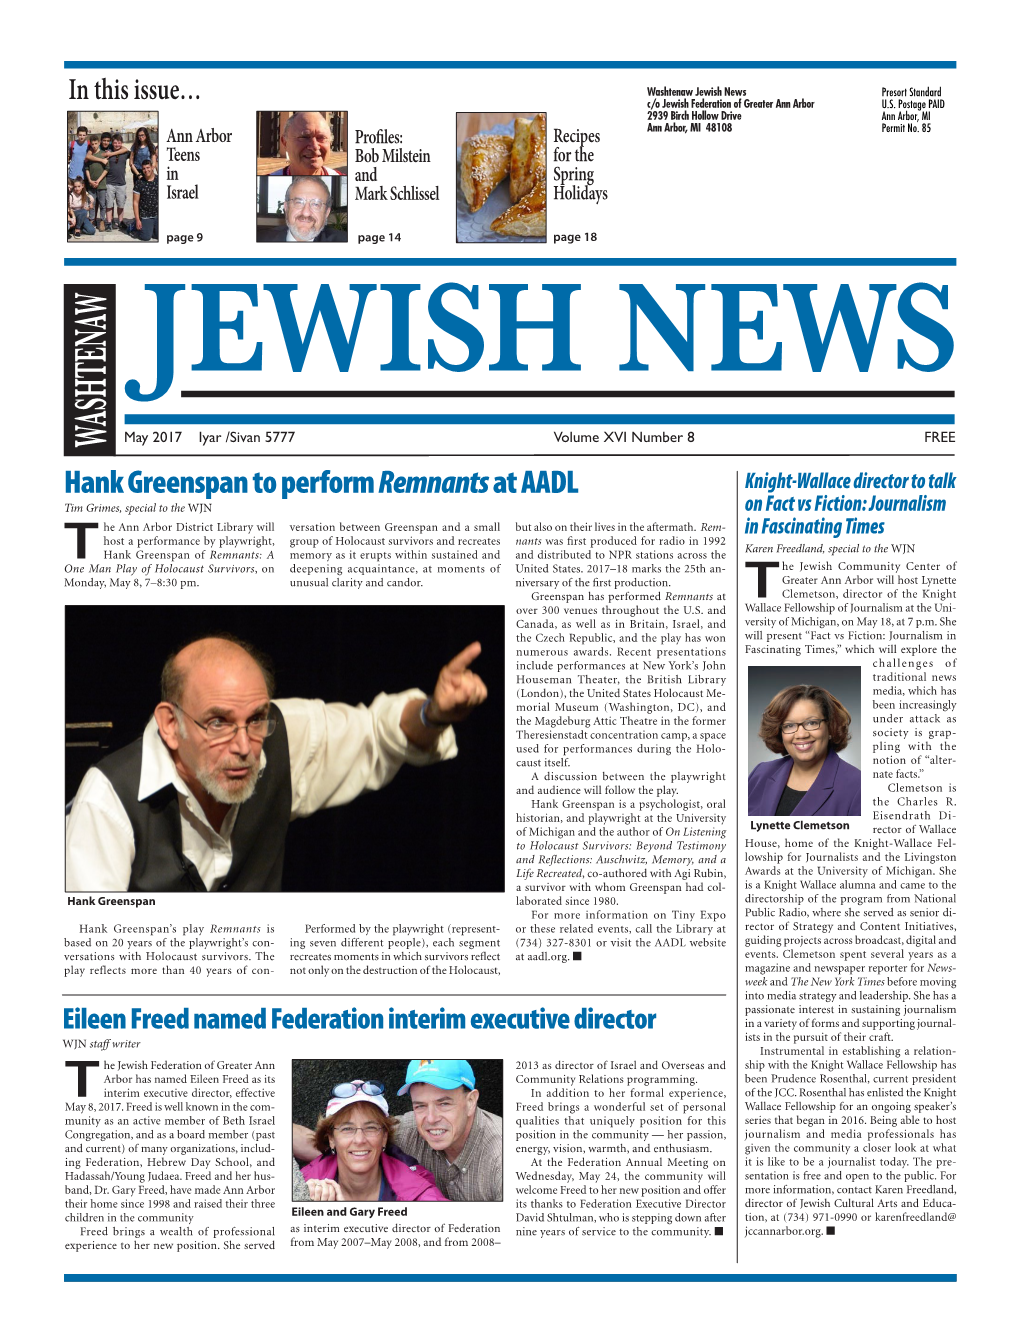 May 2017 Iyar/Sivan5777 Page 9 Israel in Teens Ann Arbor